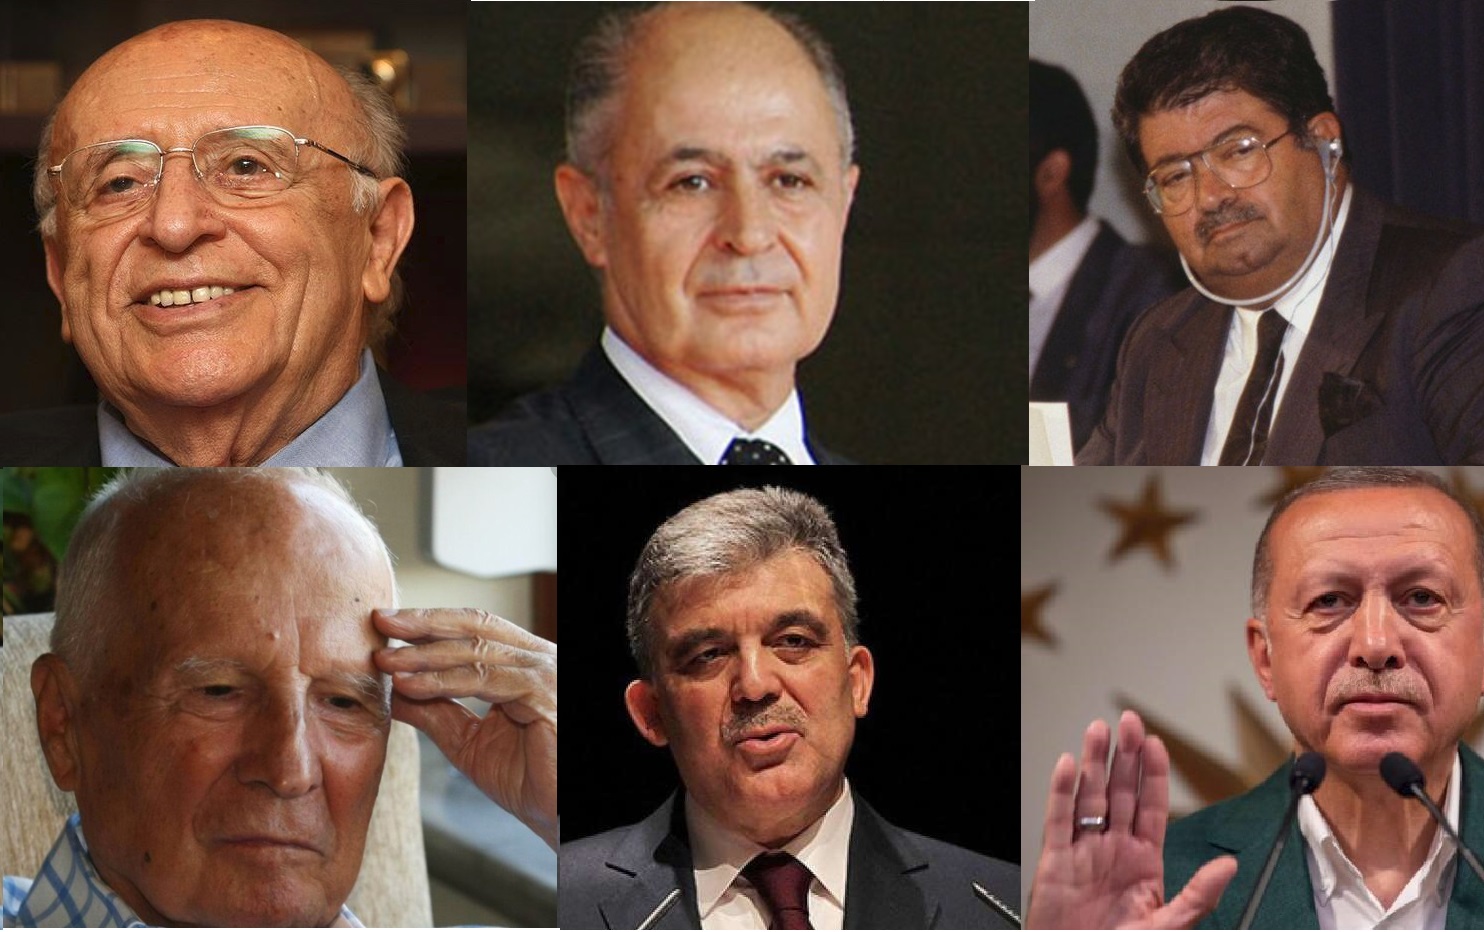 Թուրքիայի վերջին 6 նախագահներից ամենաշատը Էրդողանն է դատական հայց ներկայացրել քաղաքացիների դեմ